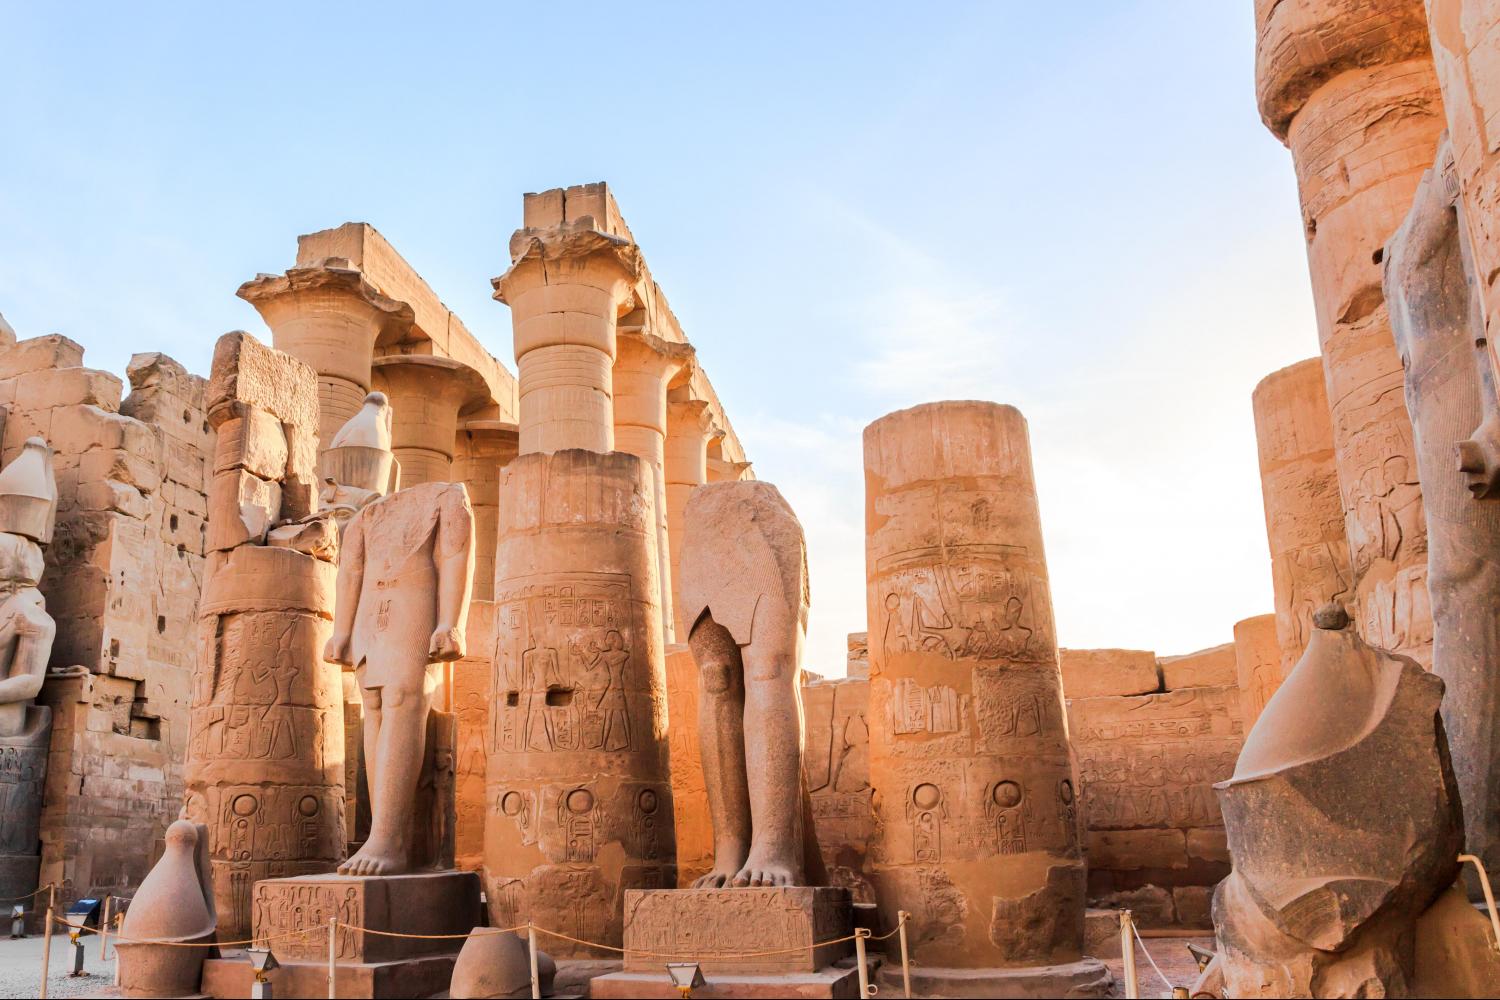 Отдыхе в Египте 2018: популярные курорты, цены и советы